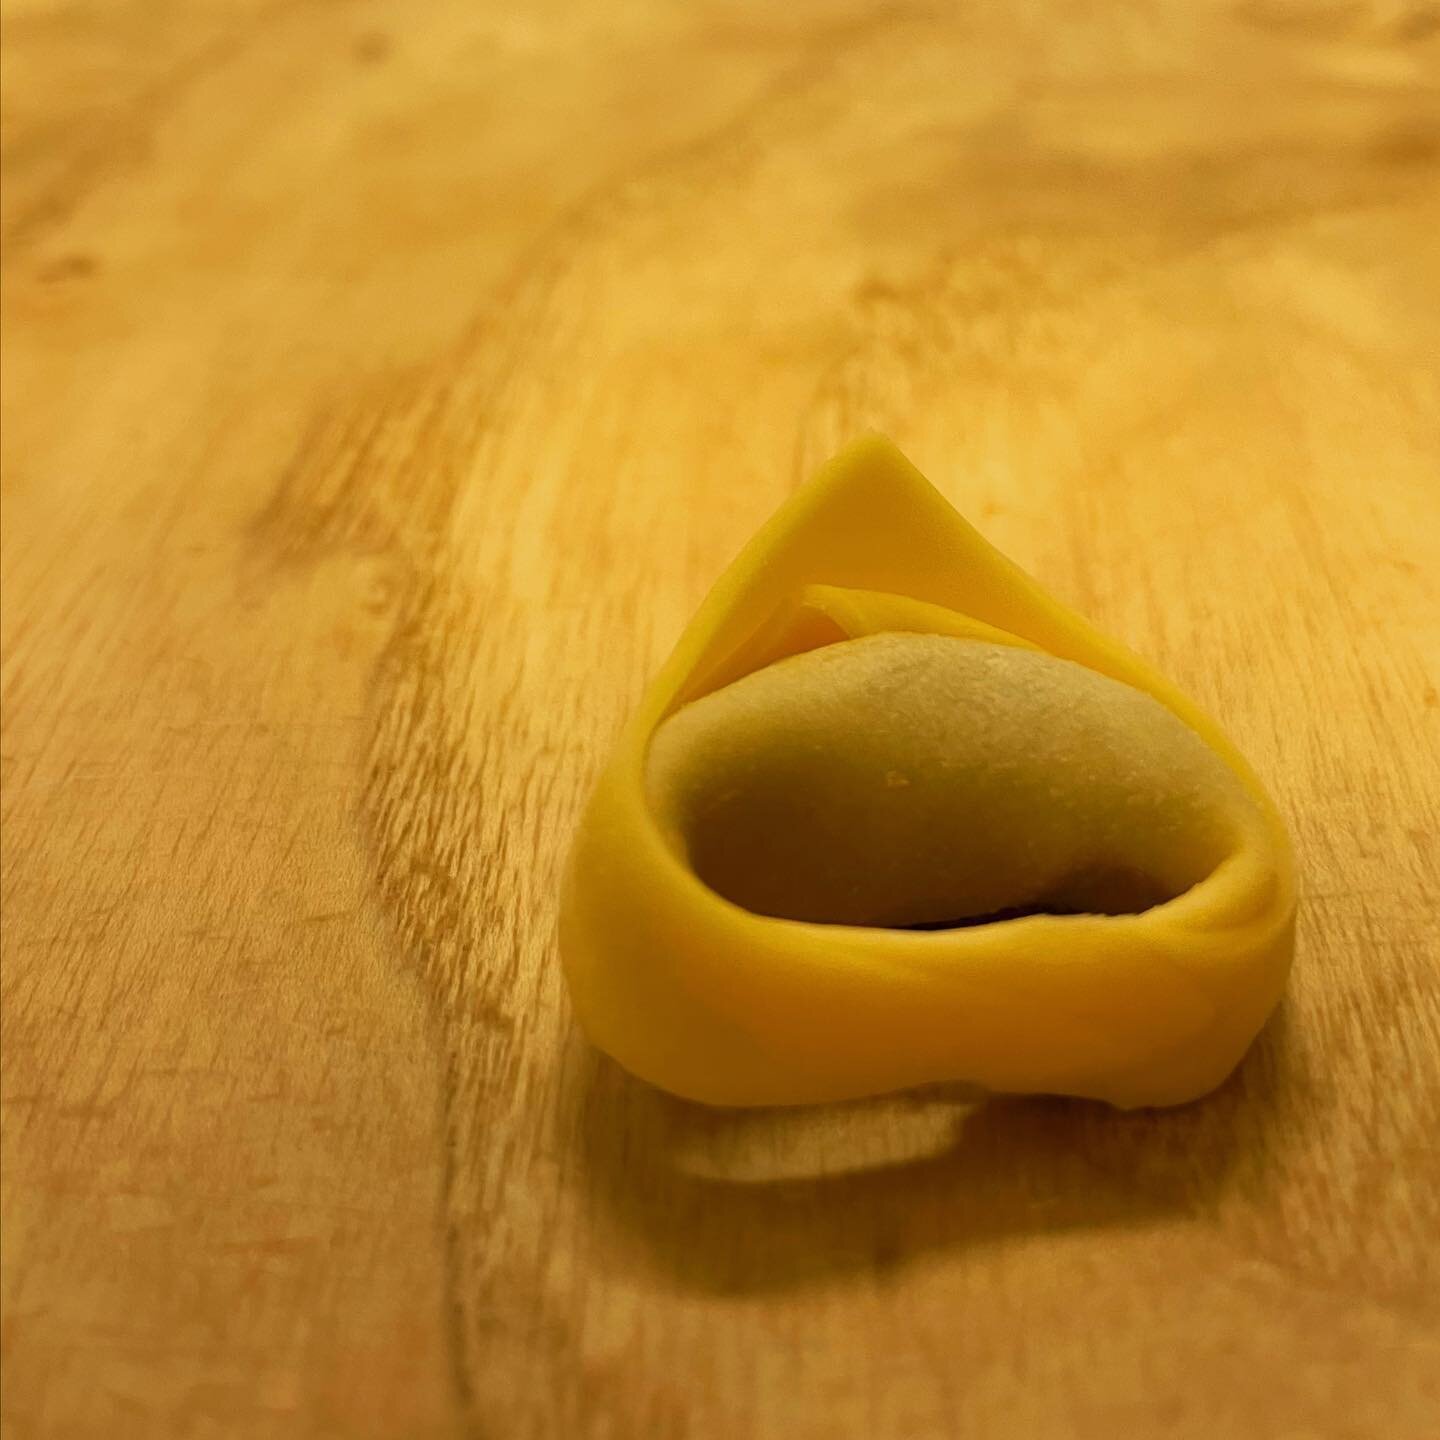 Tortellino. 
Prova d&rsquo;artista. 1 di 21000 (circa)
Tecnica mista. 
Farina, uova, carne, formaggio su legno. #food #foodporn #ravioliamilano #ravioli #pastificiobertoni